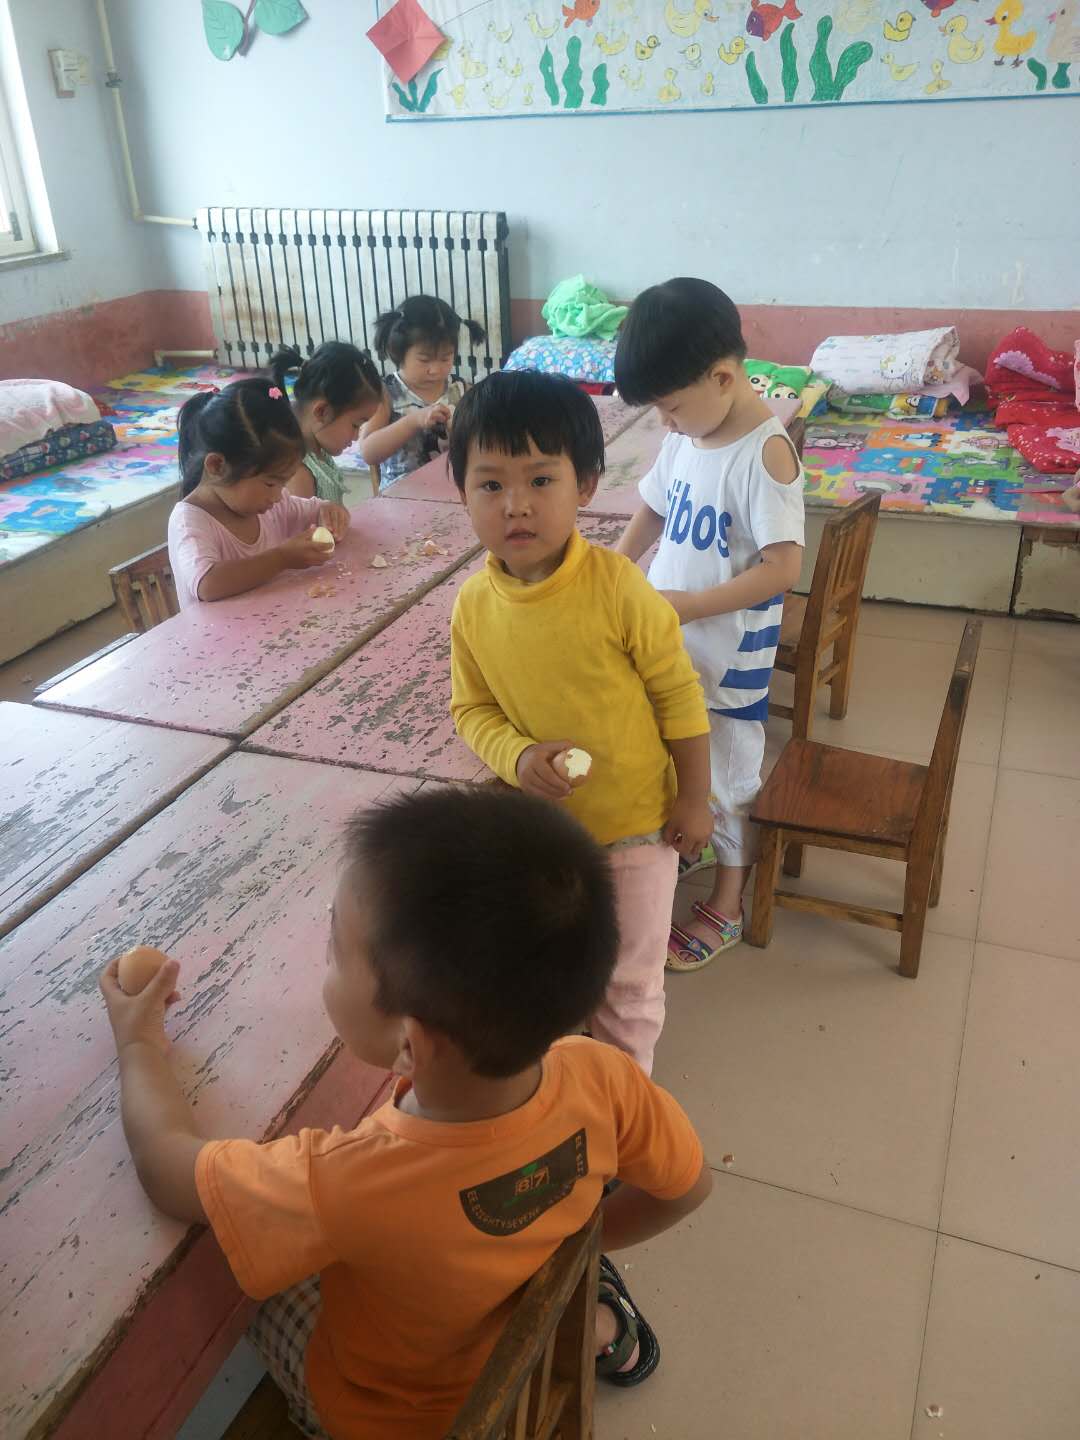 在幼儿园，与小朋友在一起的妮妮（图中穿黄衣服者）